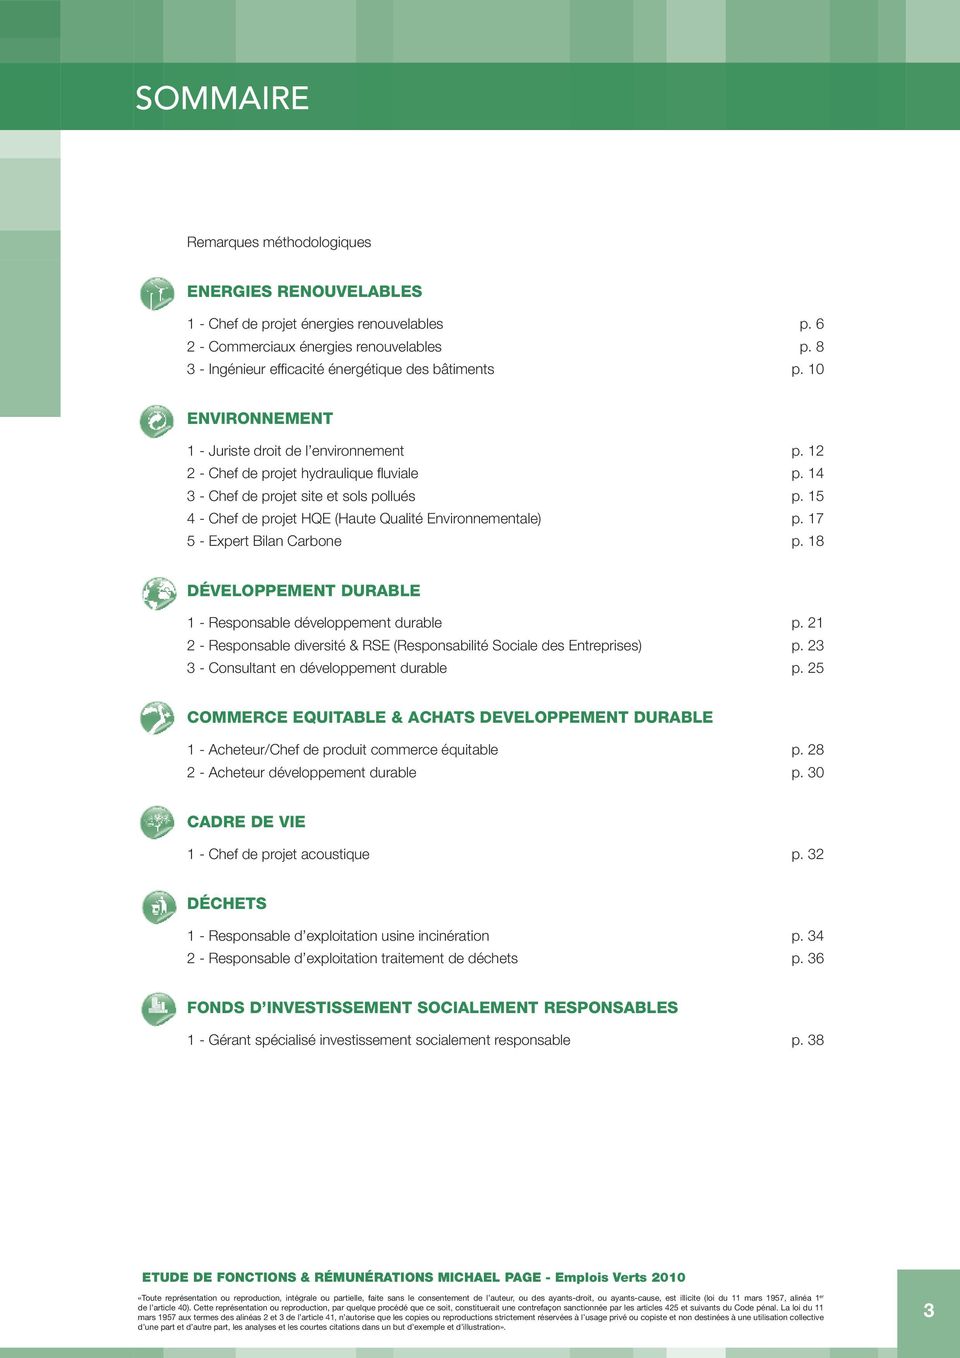 14 3 - Chef de projet site et sols pollués p. 15 4 - Chef de projet HQE (Haute Qualité Environnementale) p. 17 5 - Expert Bilan Carbone p.